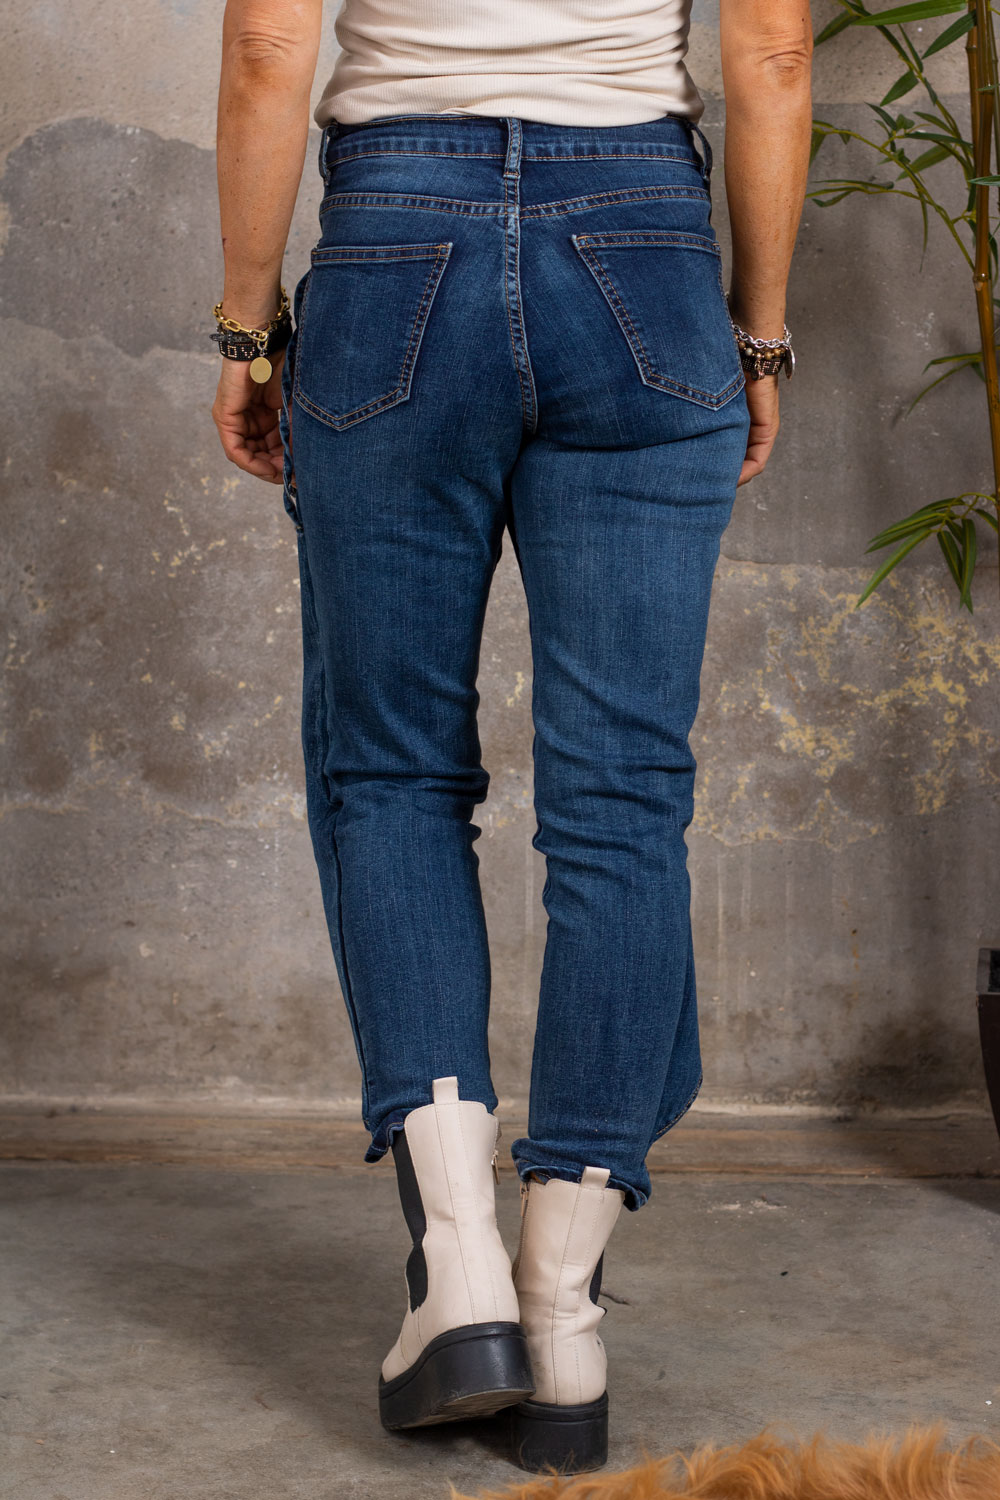 Jeans with Wrap - F058 - Denim